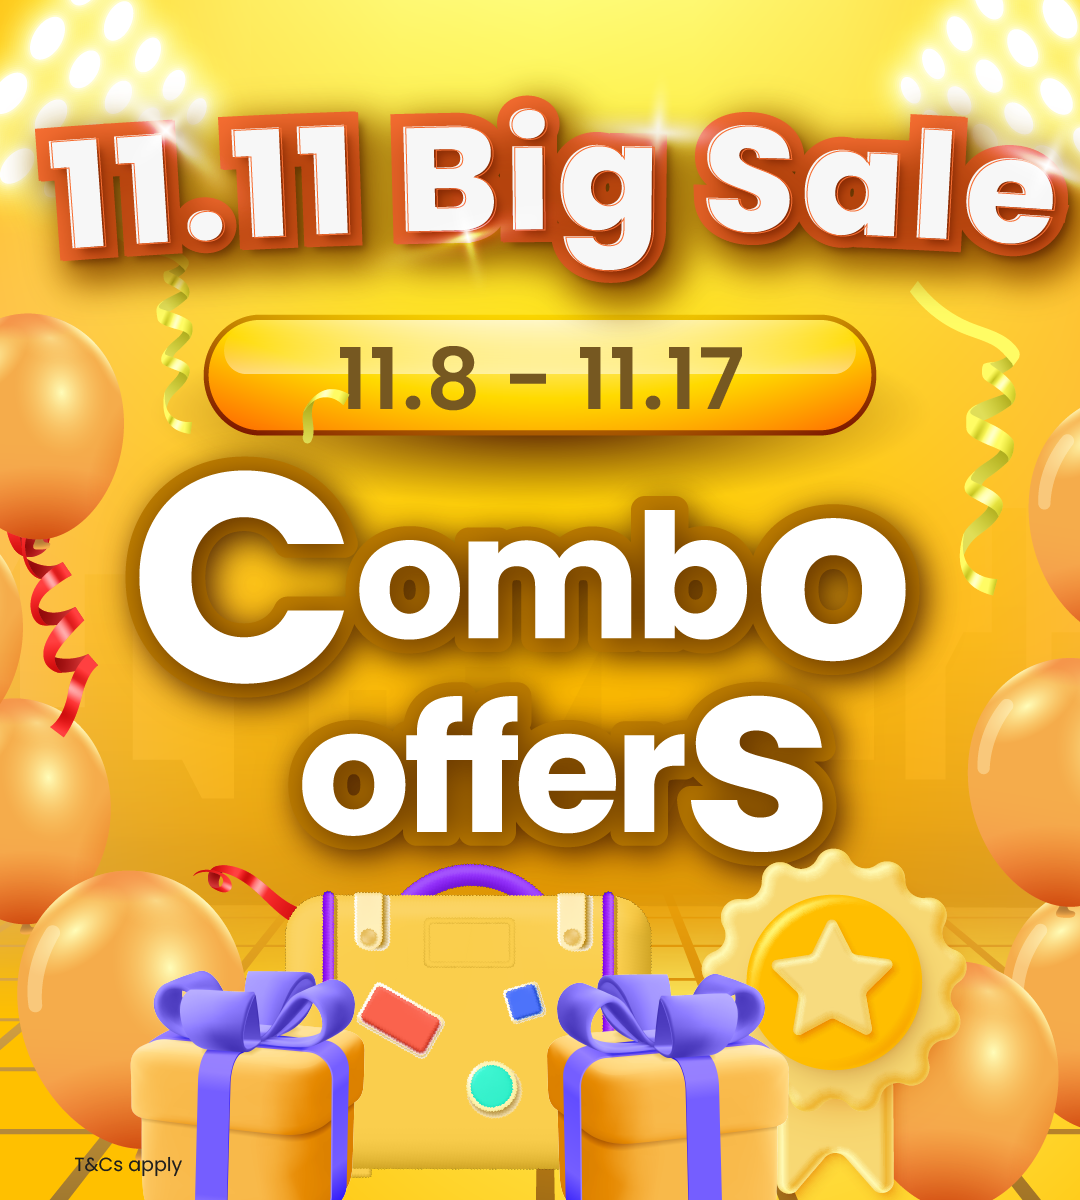 11.11 Big Sale: Exclusive Double 11 Flash Deals